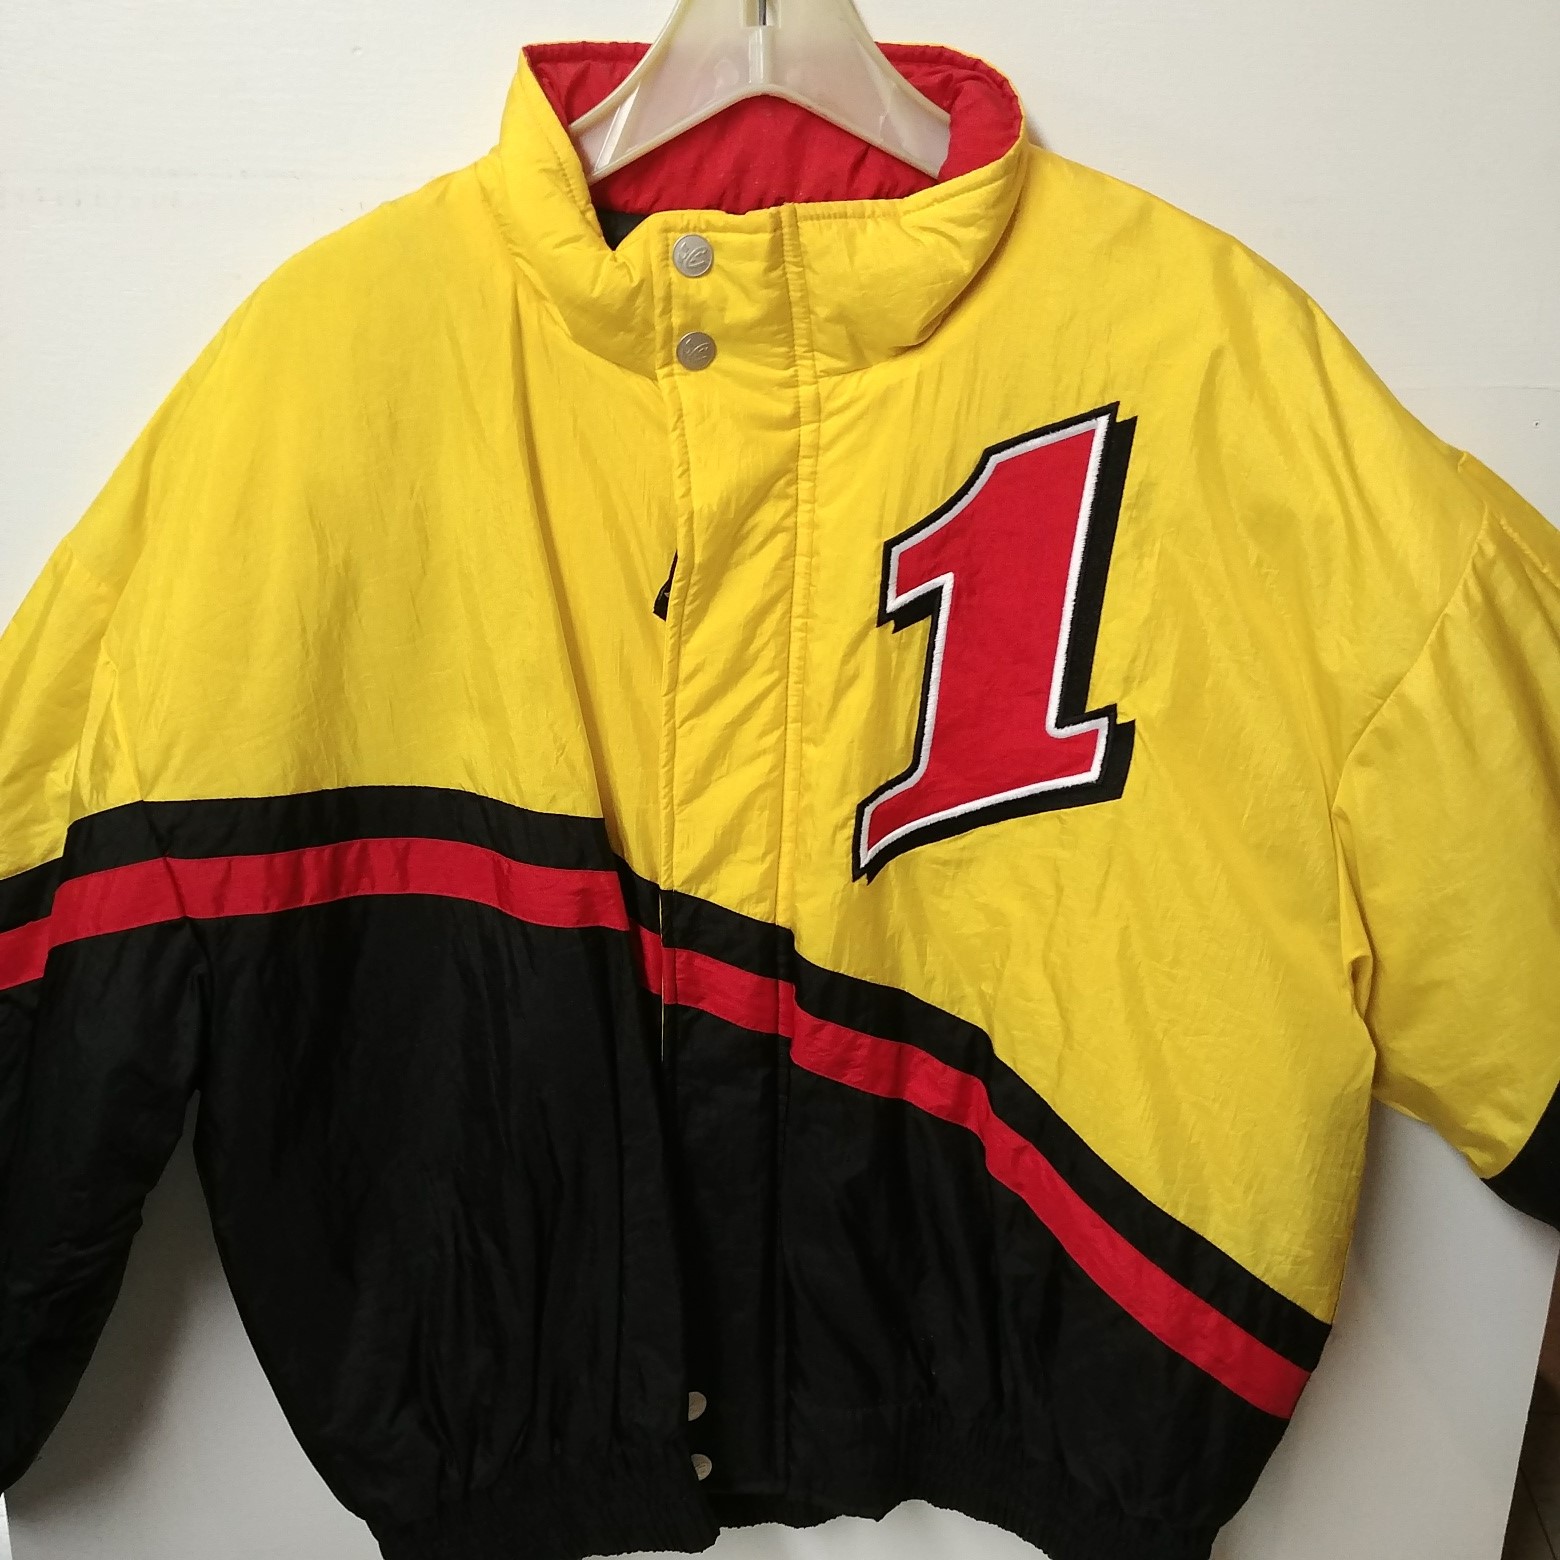 1998 Steve Park Pennzoil heavy weight jacket